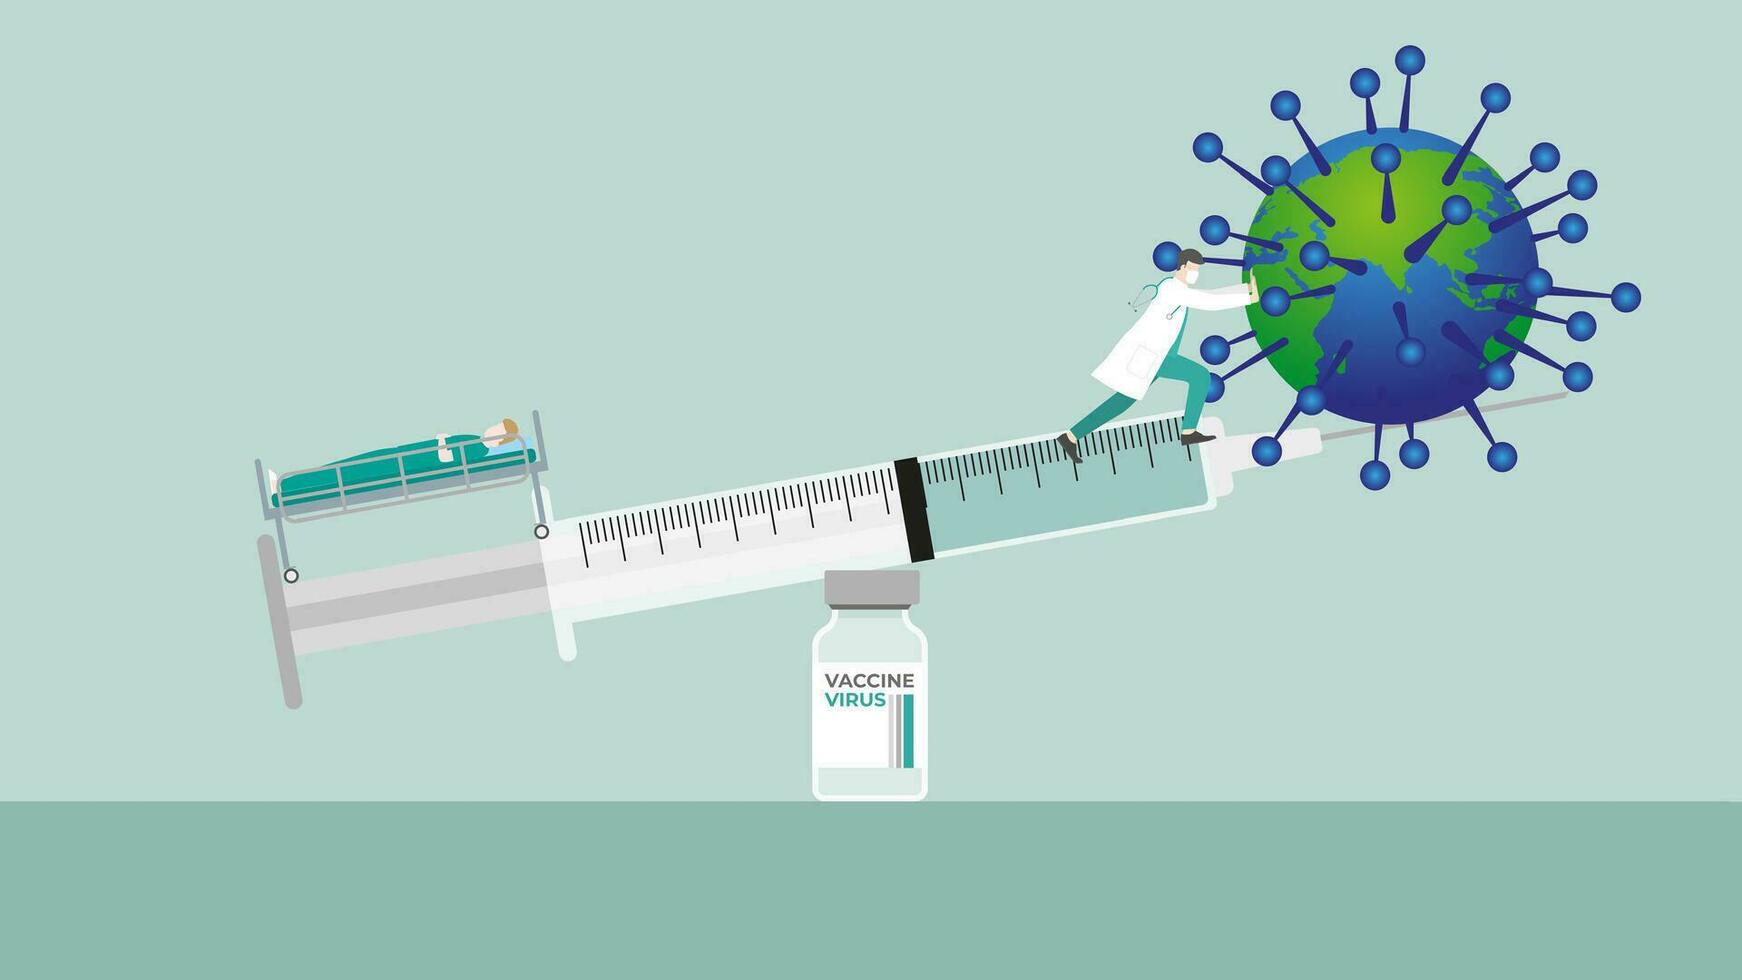 médico guardando Saldo do seringa em vacina garrafa para vírus e infectado paciente debaixo investigação vetor